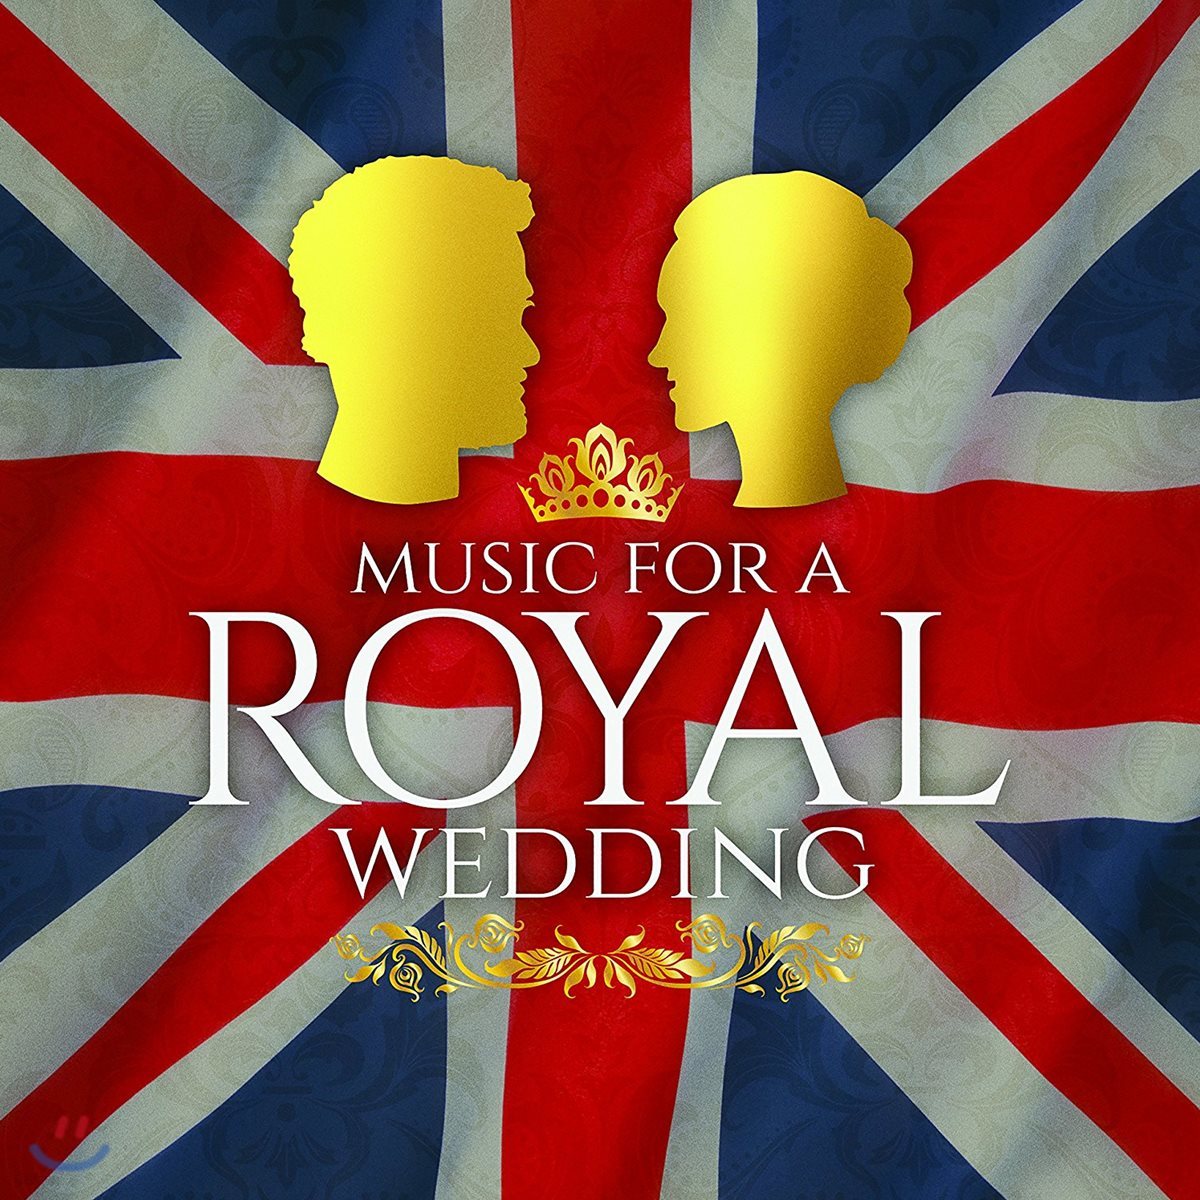 왕실 결혼 음악 (Music for a Royal Wedding)